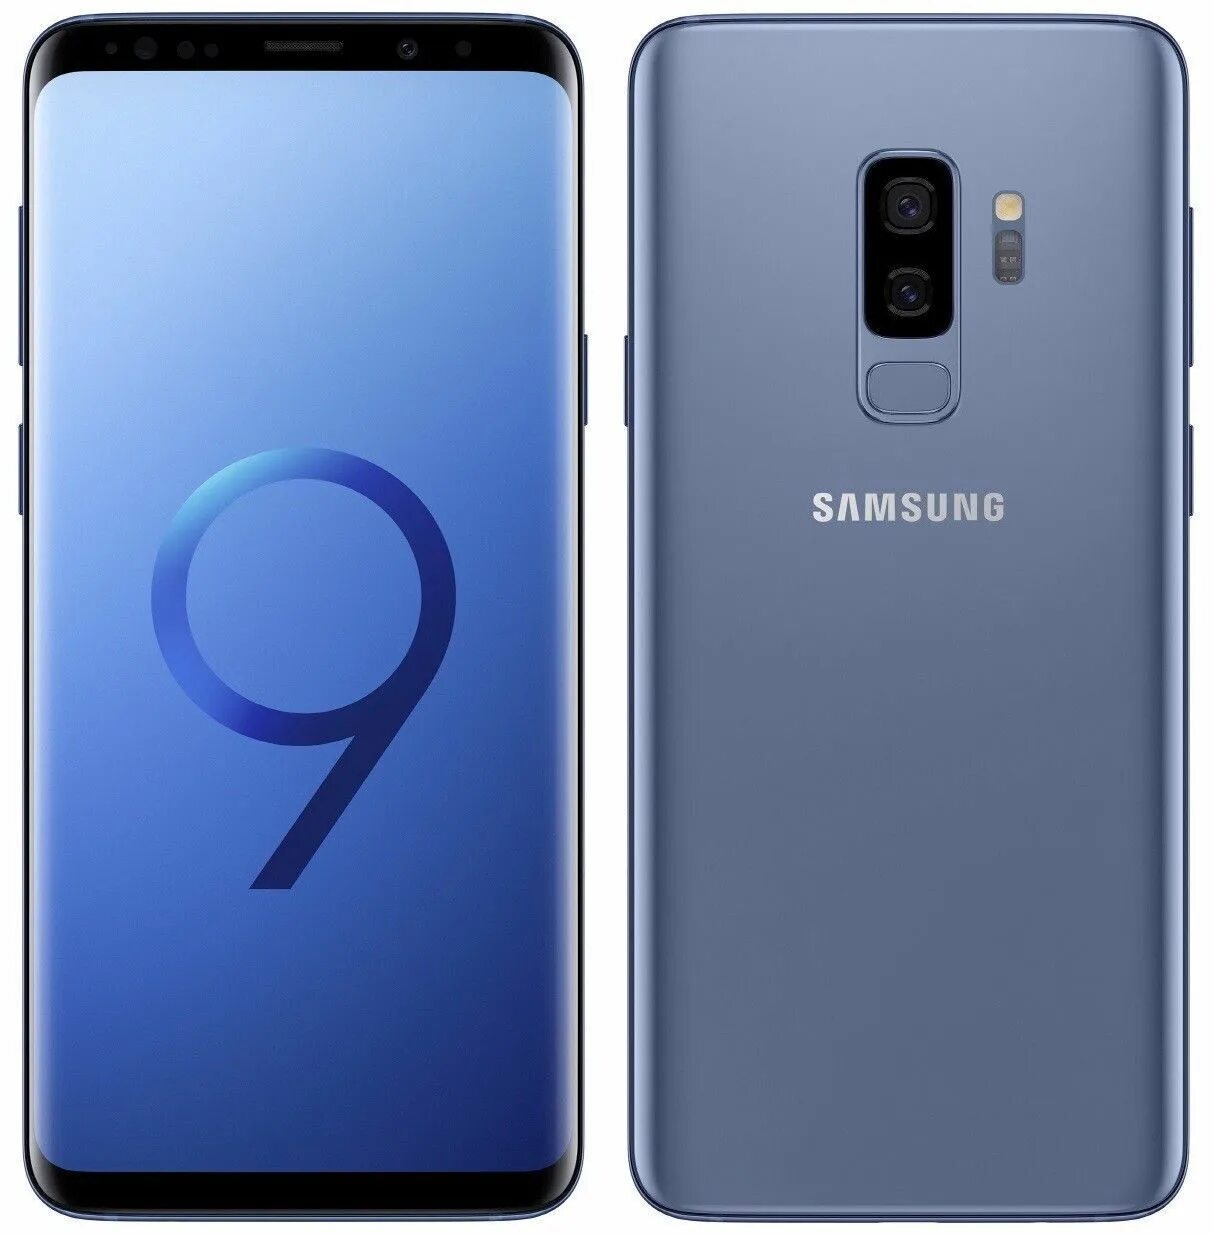 Samsung Galaxy s9 Plus. Samsung Galaxy s9/s9 Plus. Samsung Galaxy s9 SM-g960f. Samsung Galaxy s9 64gb. 5g samsung s8